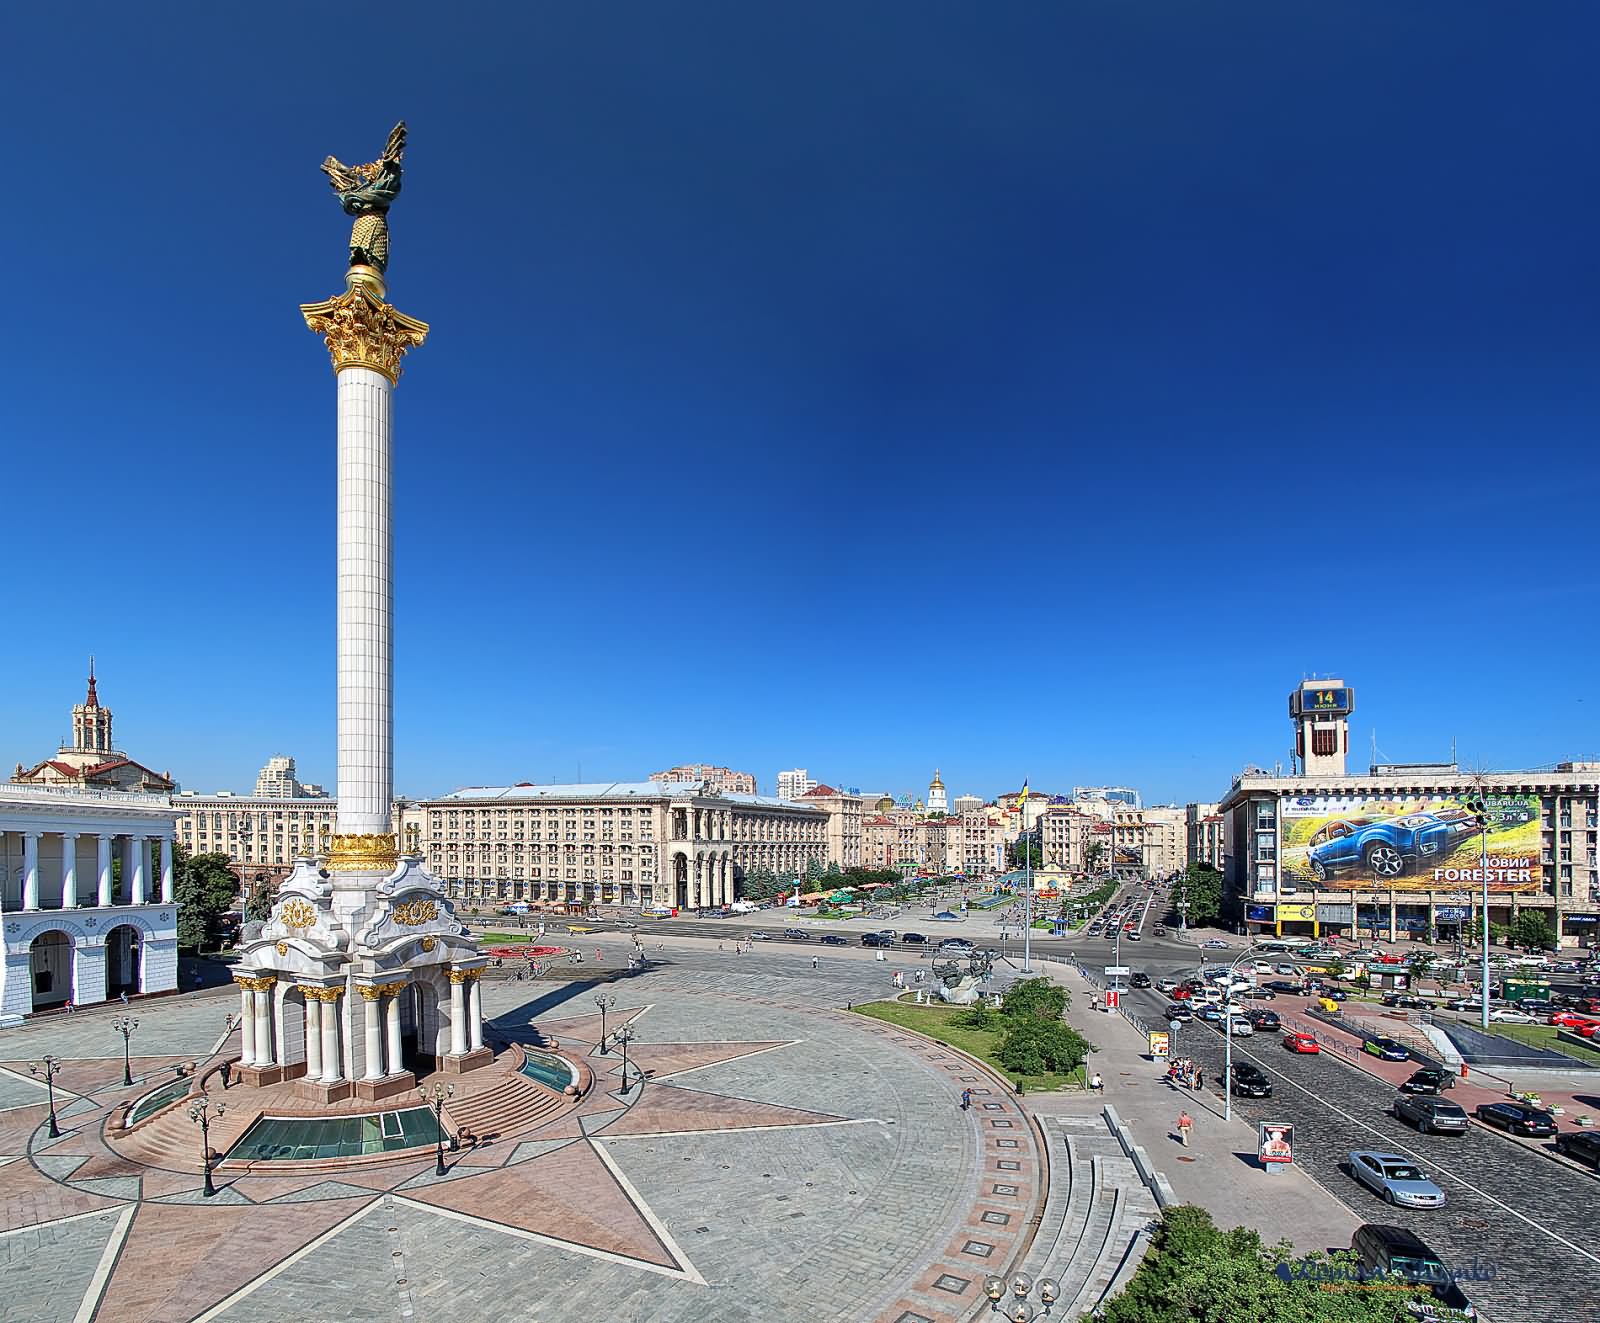 40 Incredible Pictures Of The Maidan Nezalezhnosti In Kiev, Ukraine